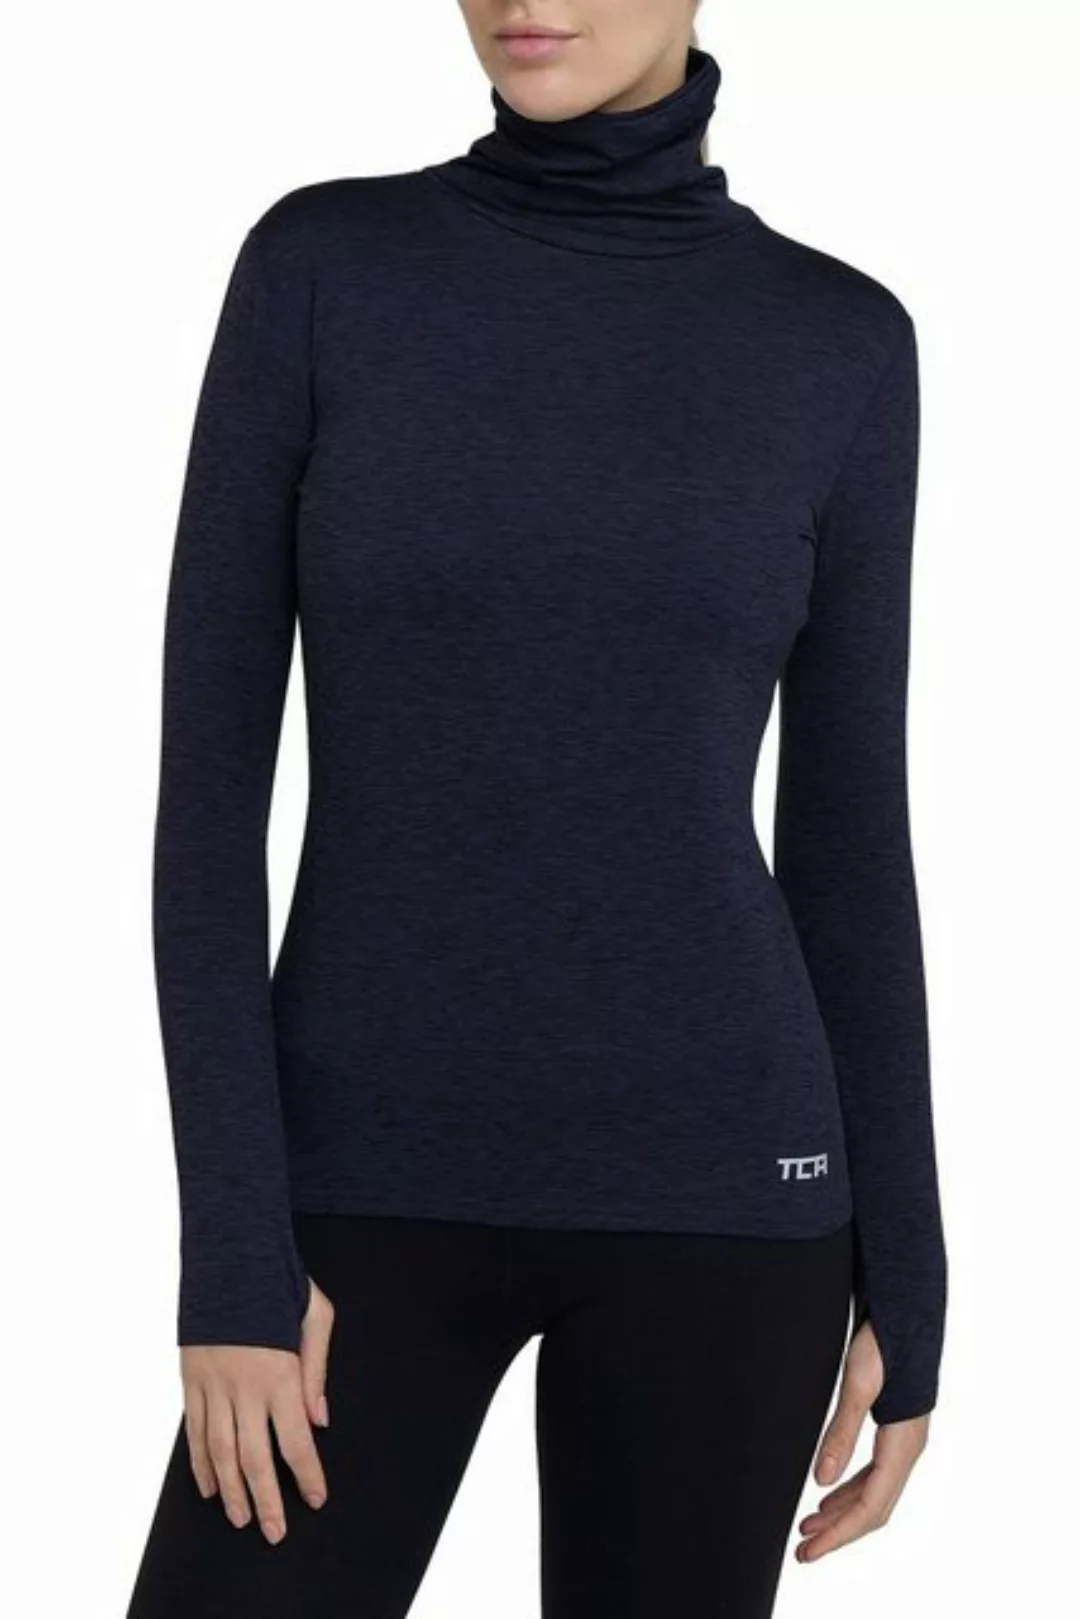 TCA Langarmshirt TCA Damen Winter Laufshirt Langarm mit Reißverschluss - We günstig online kaufen